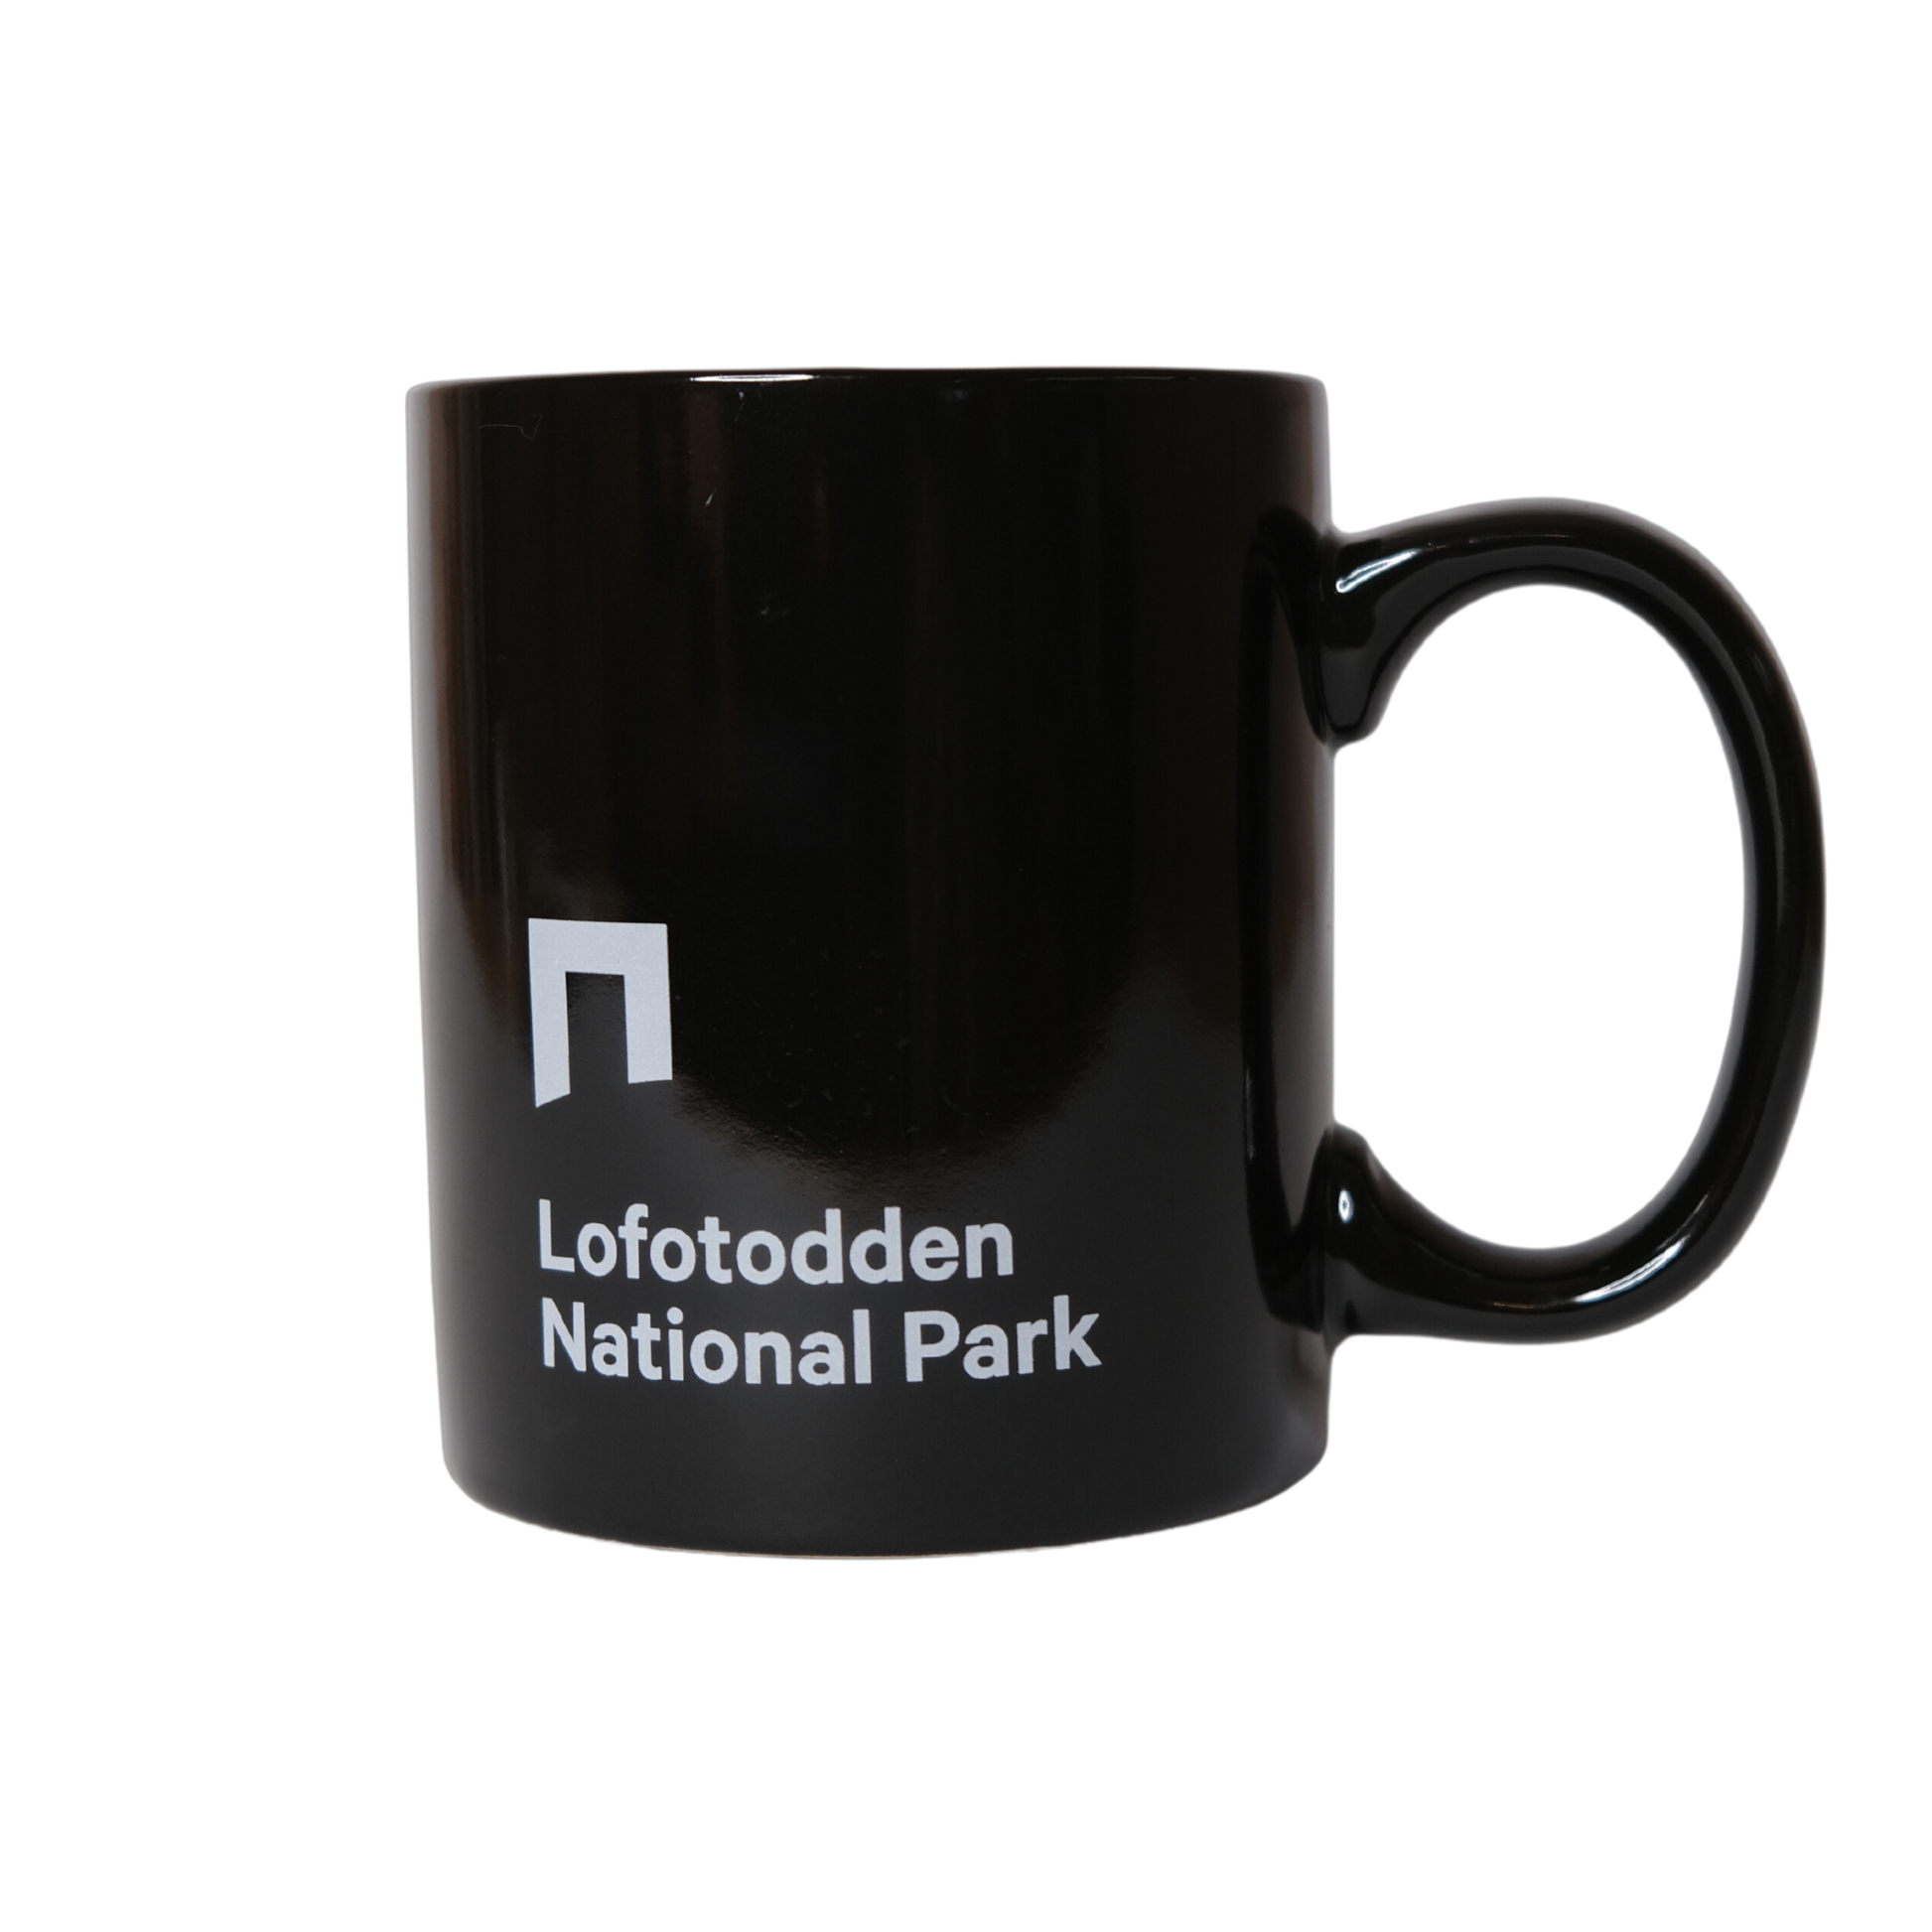 Lofotodden National Park ceramic mug